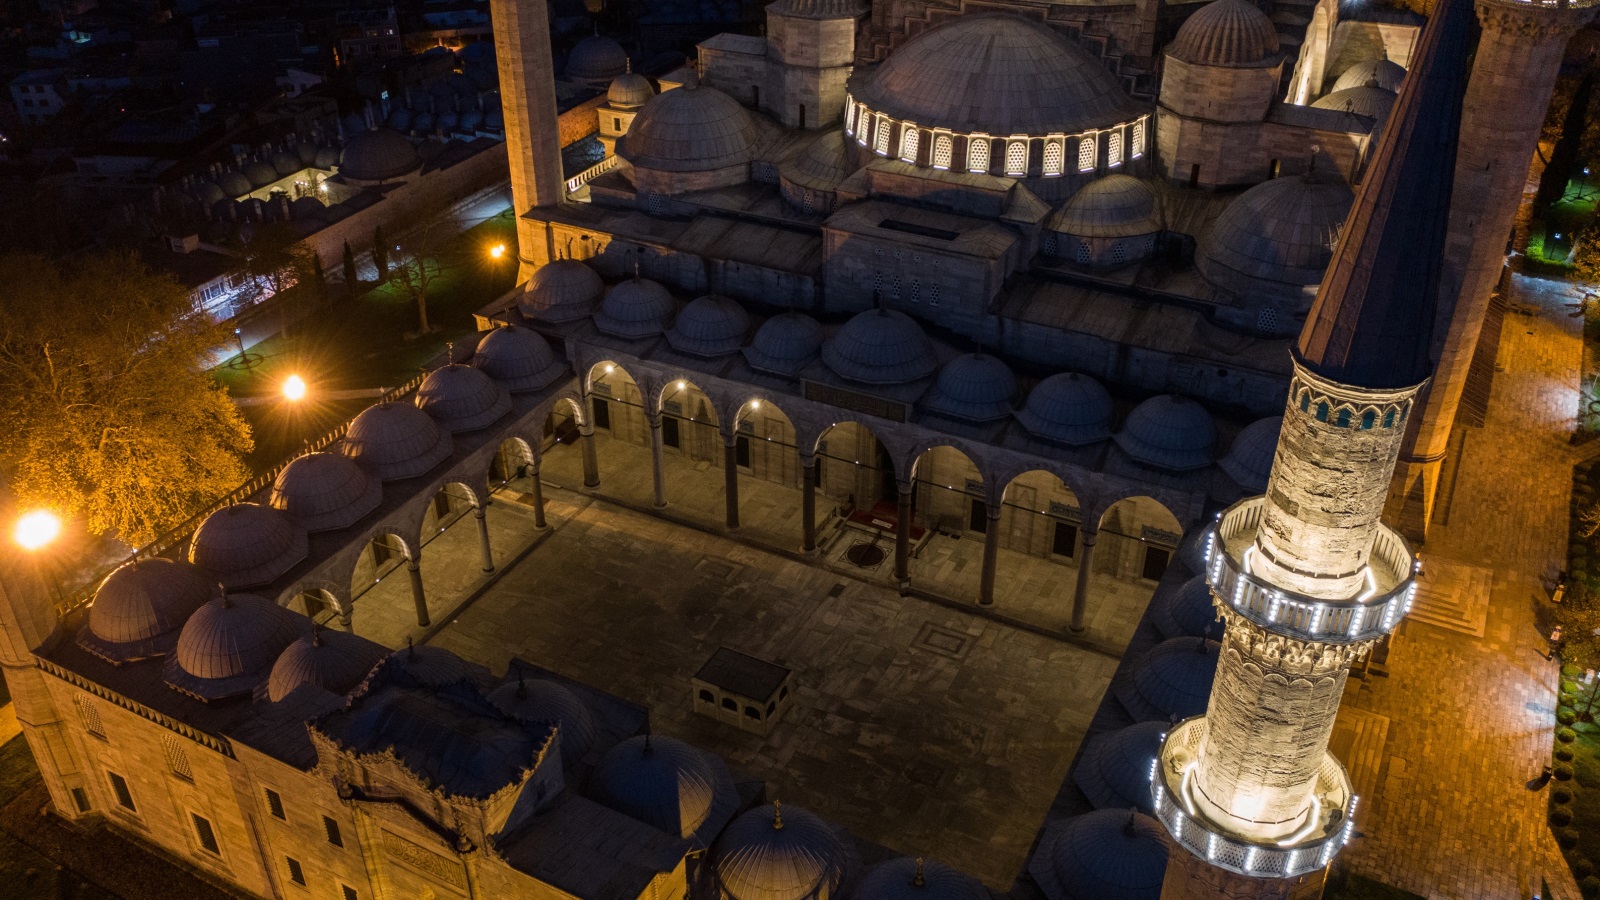  الدولة العثمانية اشتهرت مساجدها تاريخيا بفخامة العمارة وتميز الإنارة (غيتي إيميجز) 